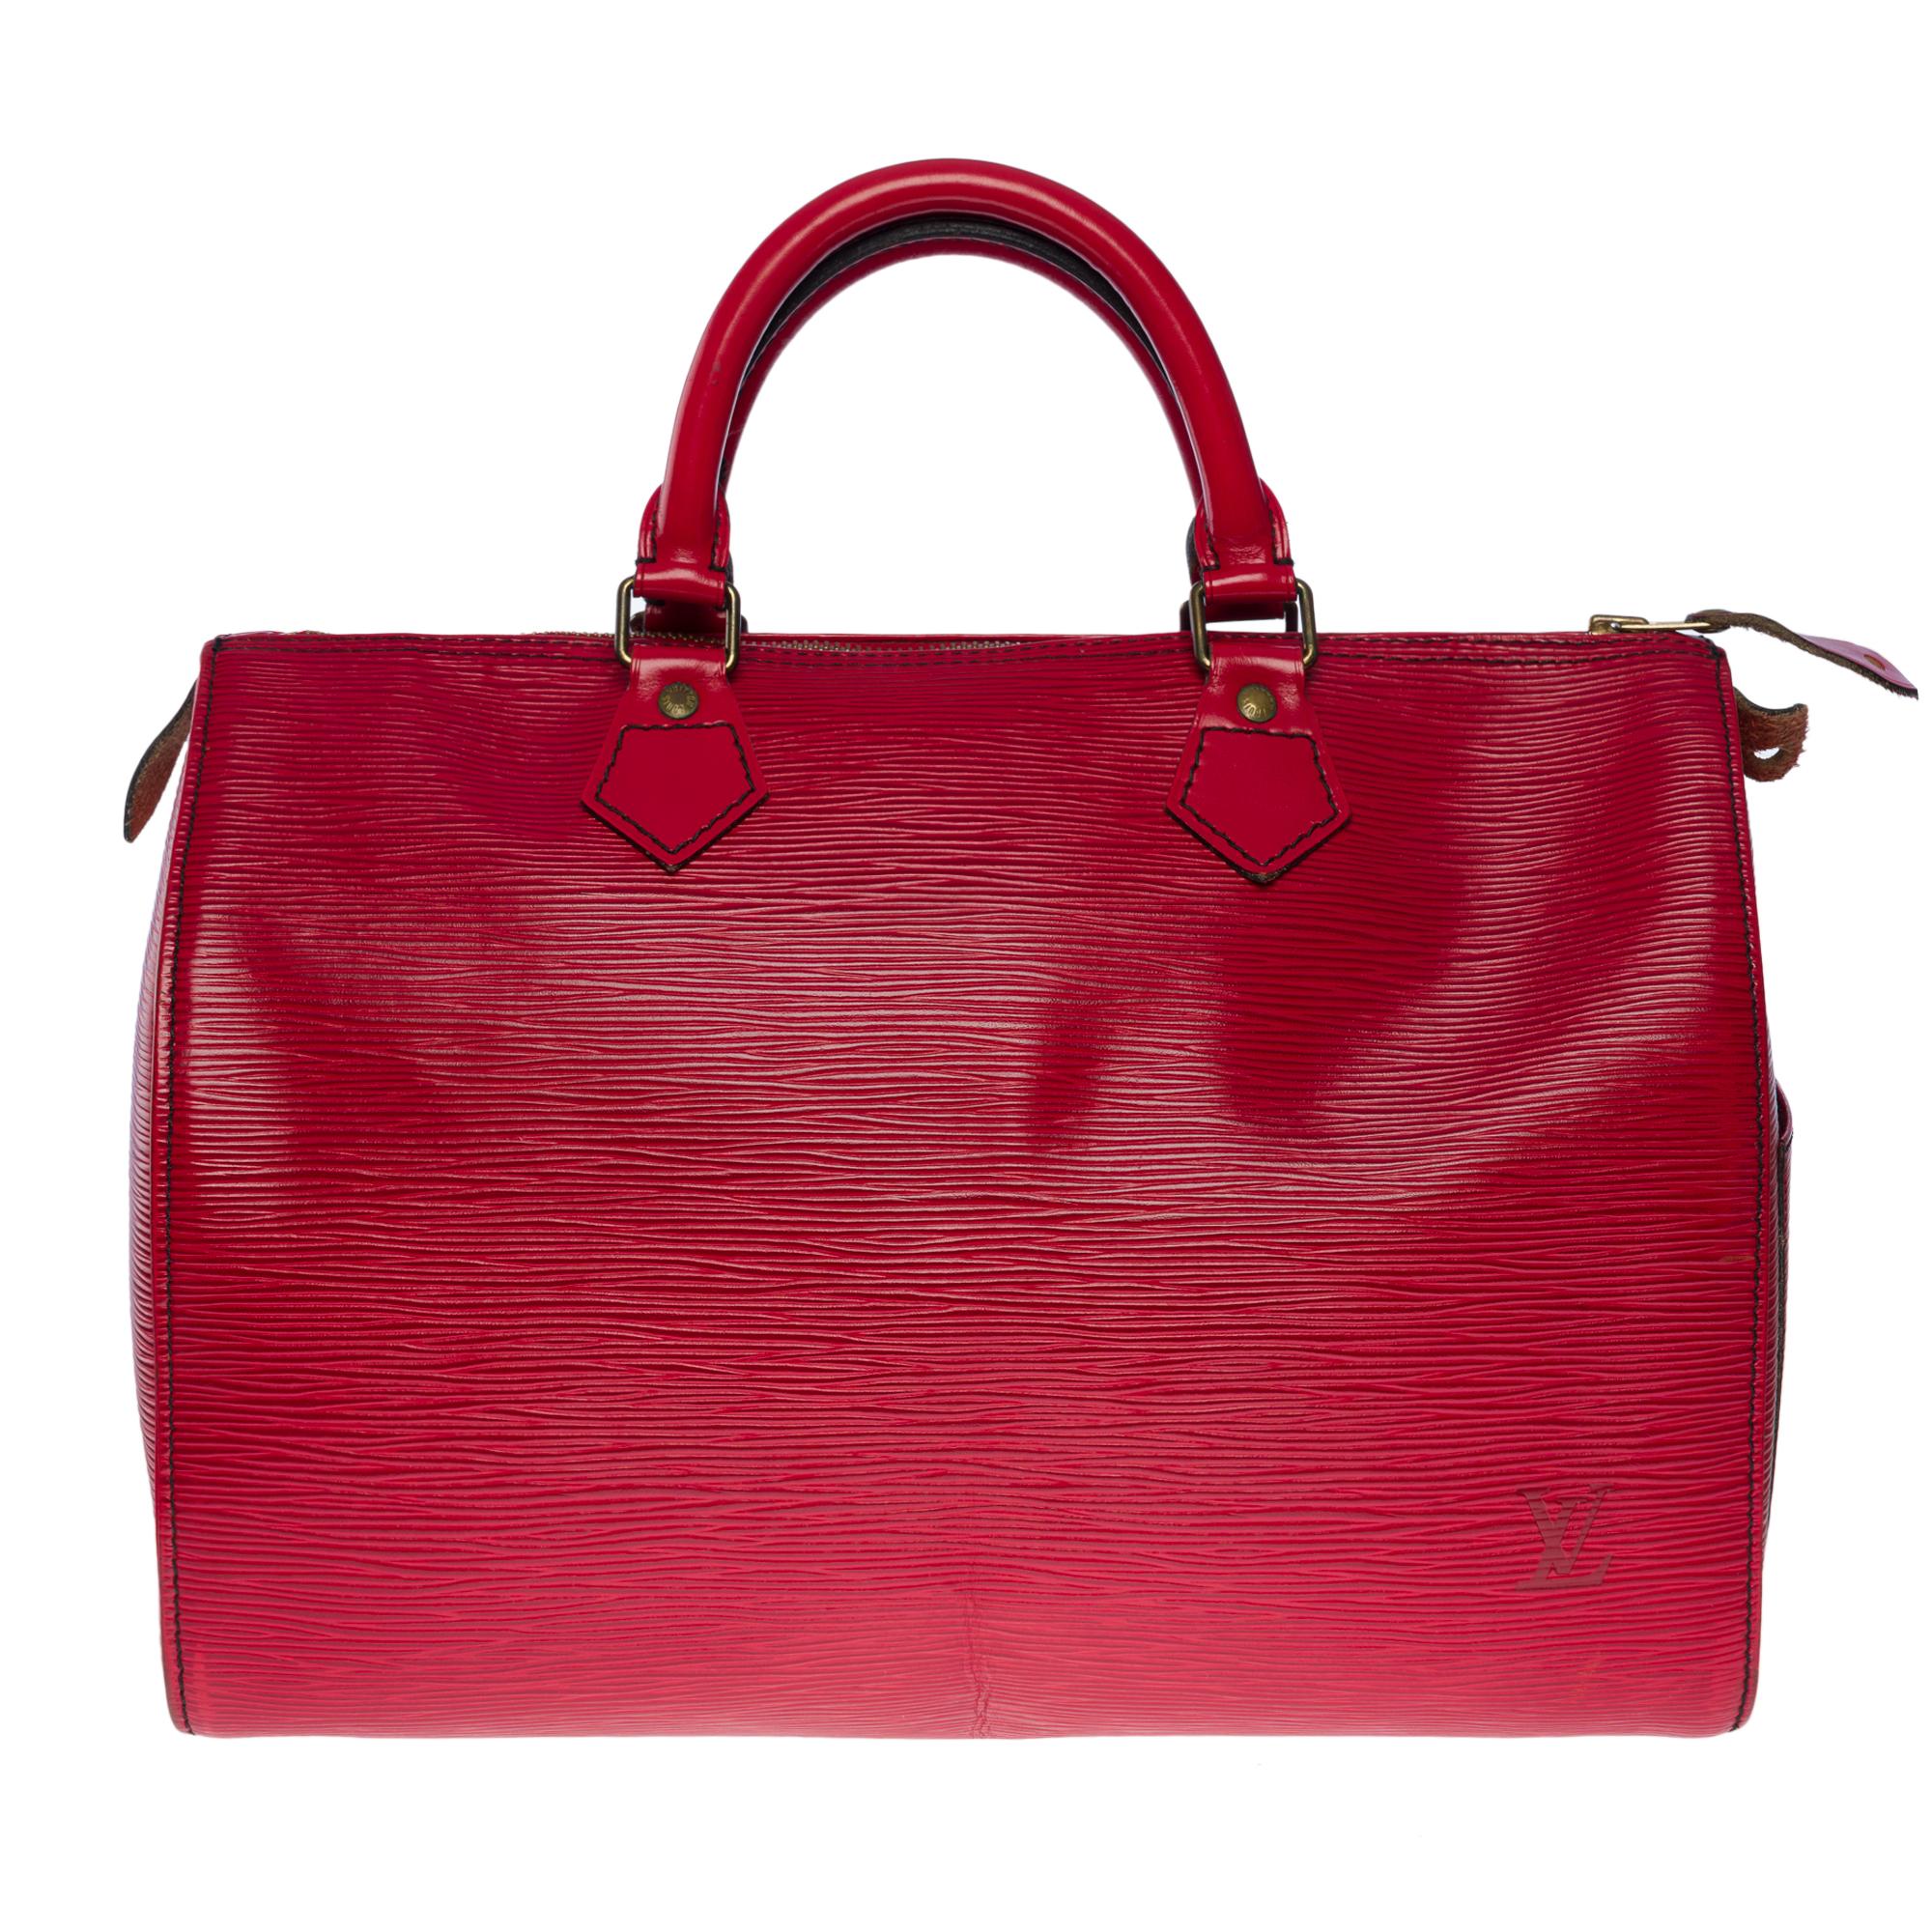 Die unentbehrliche Louis Vuitton Speedy 30 Handtasche aus rotem kastilischem Epi-Leder, mit vergoldeten Metallbeschlägen und doppeltem rotem Ledergriff, der ein Tragen in der Hand ermöglicht

Reißverschluss
Rotes Wildleder innen eine aufgesetzte